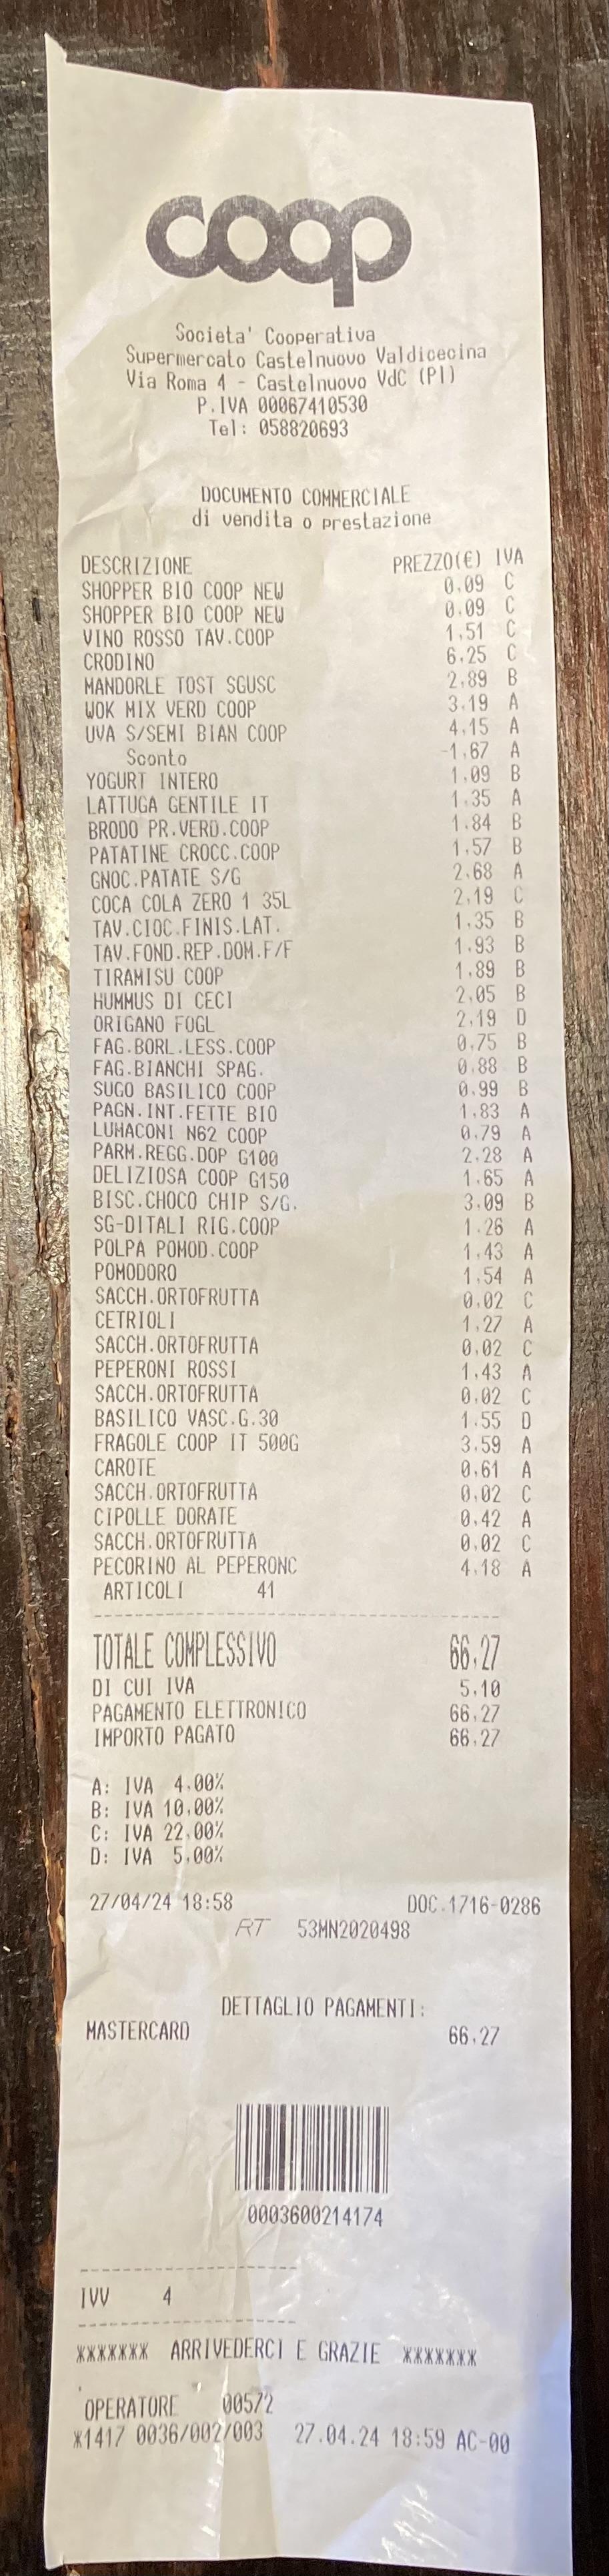 Photo of my grocery receipt. 